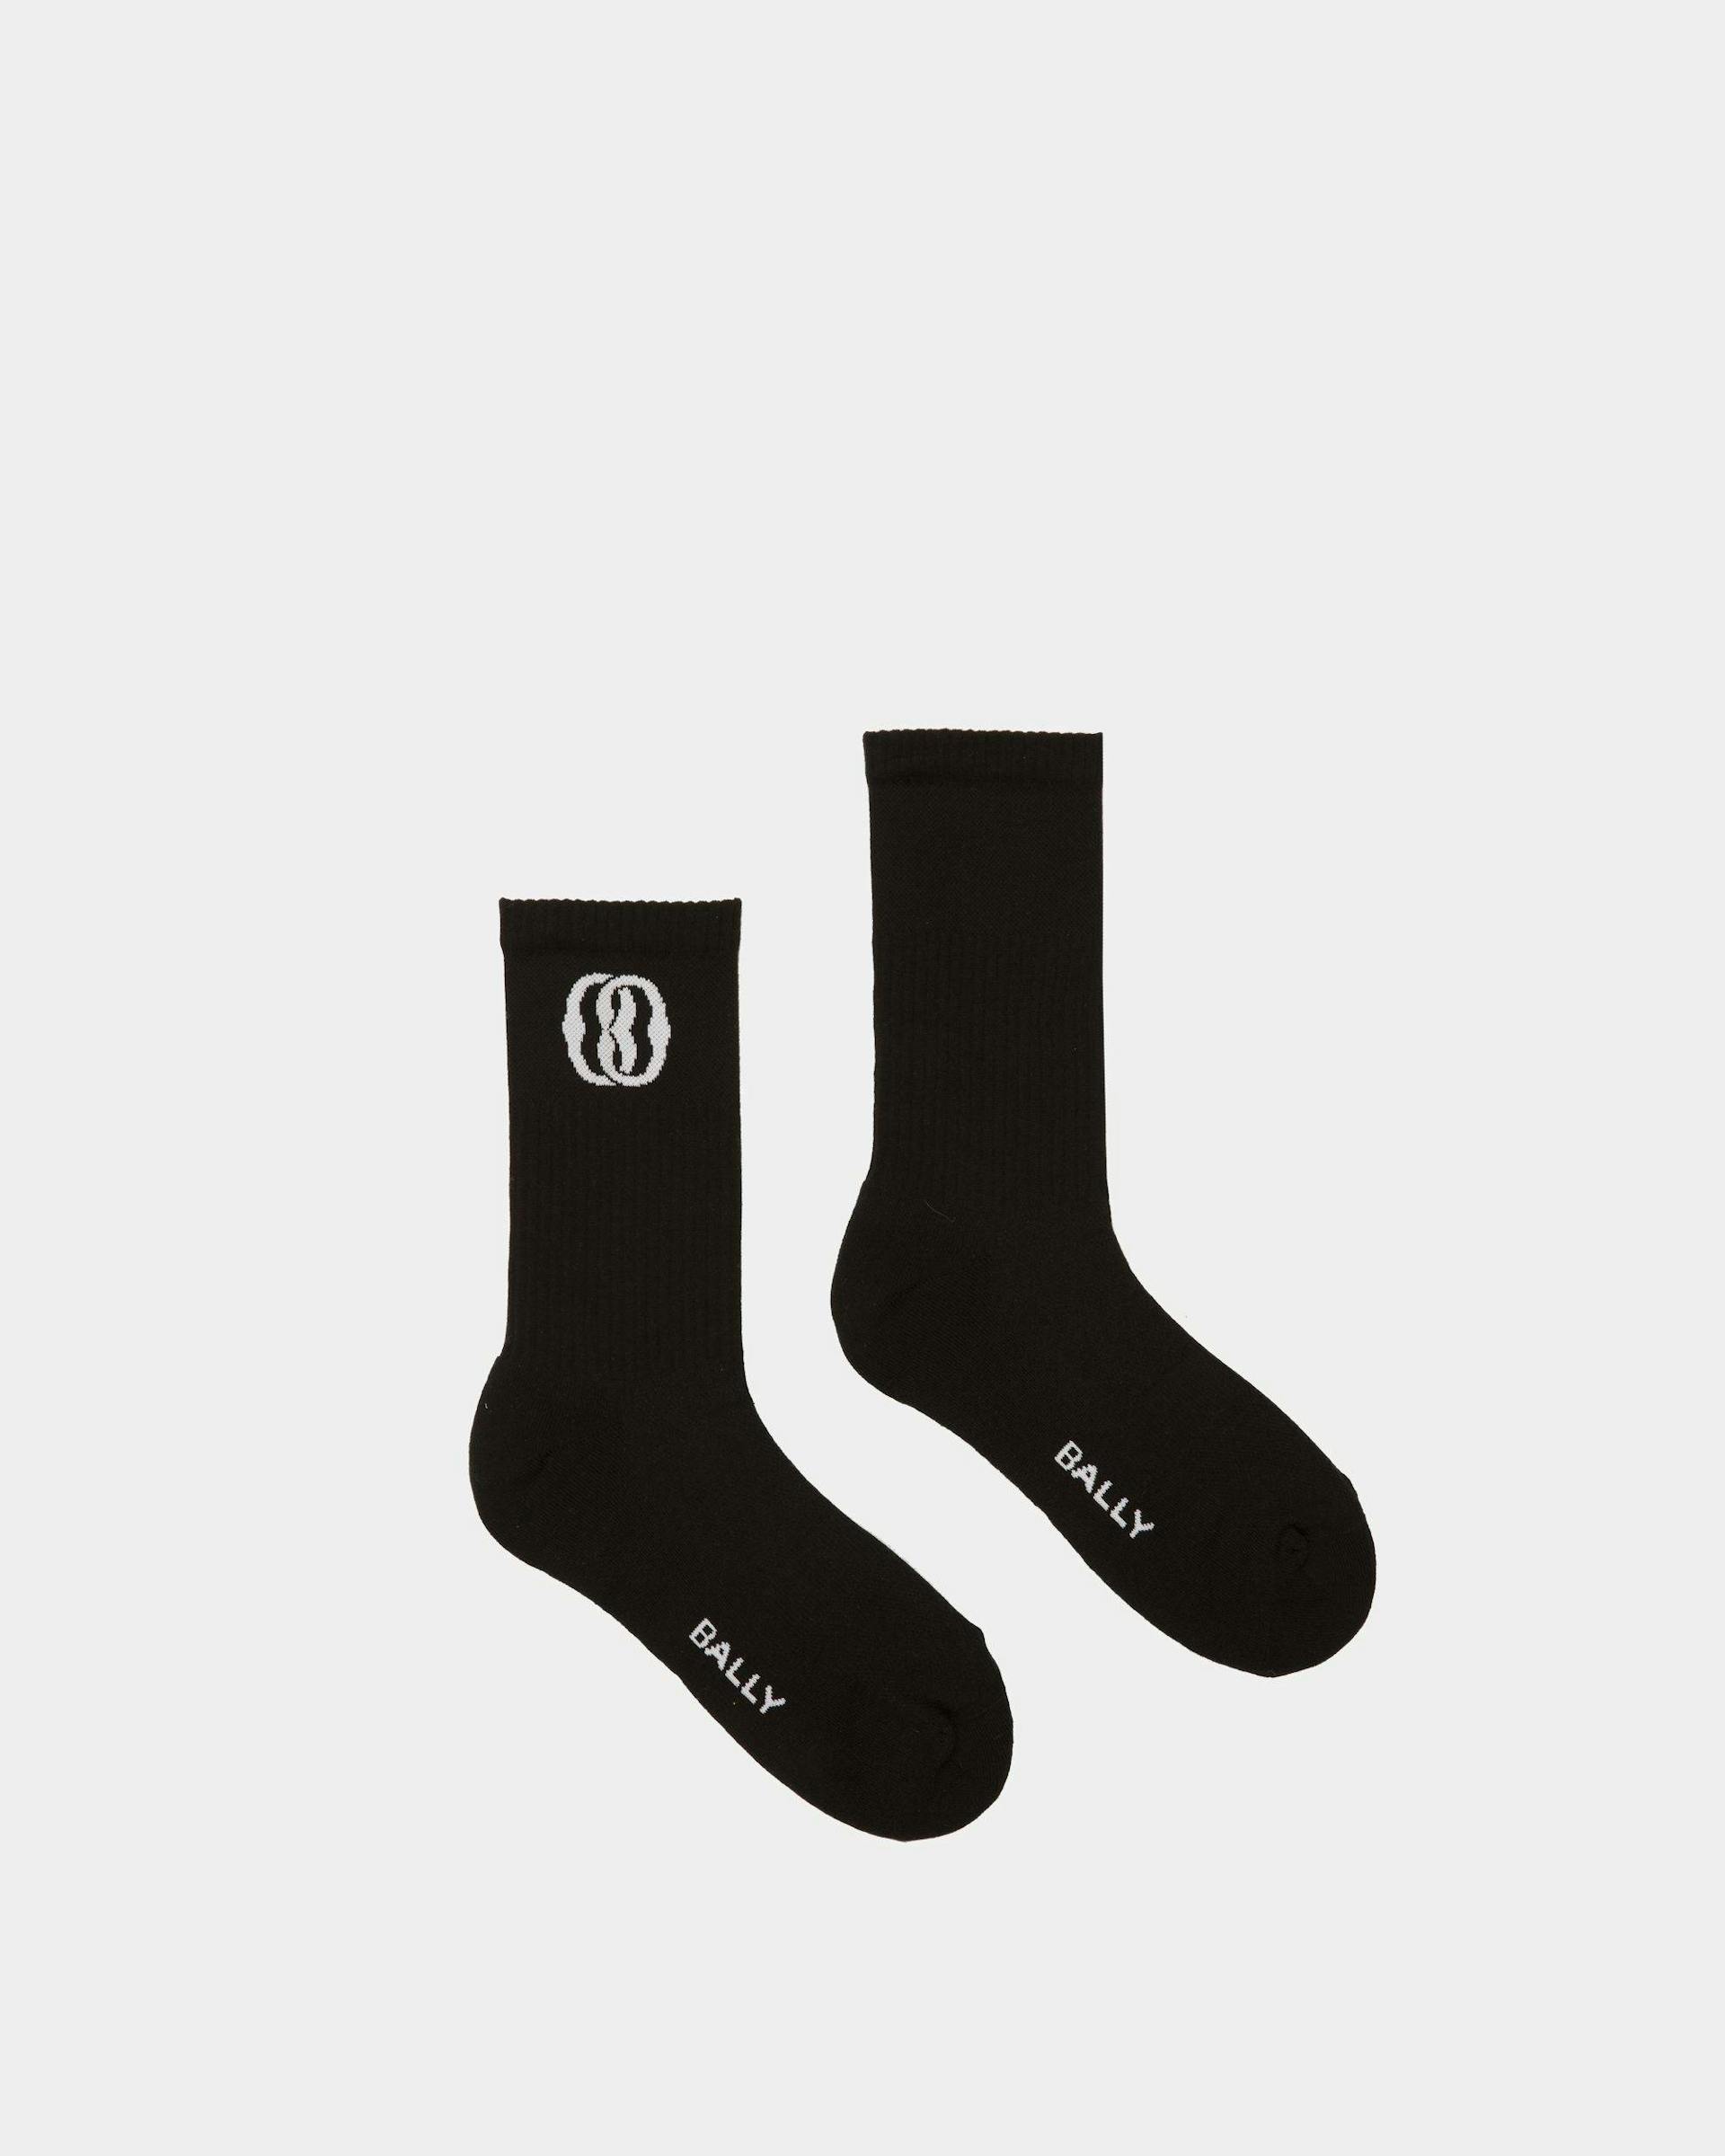 Emblem Socken Aus schwarzer Baumwolle - Herren - Bally - 01